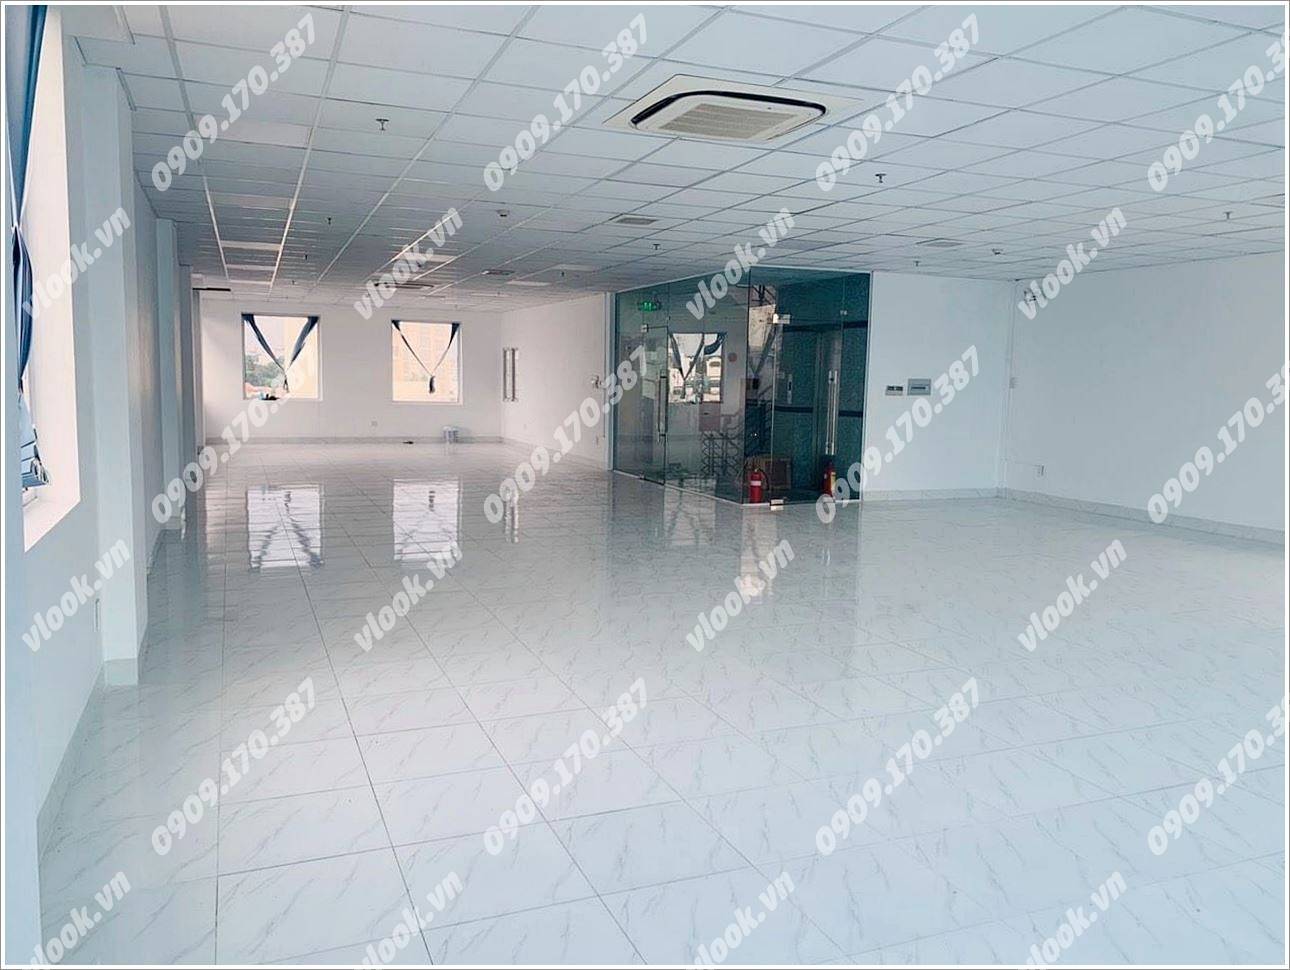 Cao ốc văn phòng cho thuê tòa nhà Building Vũ Hà, Tiền Giang, Quận Tân Bình - vlook.vn